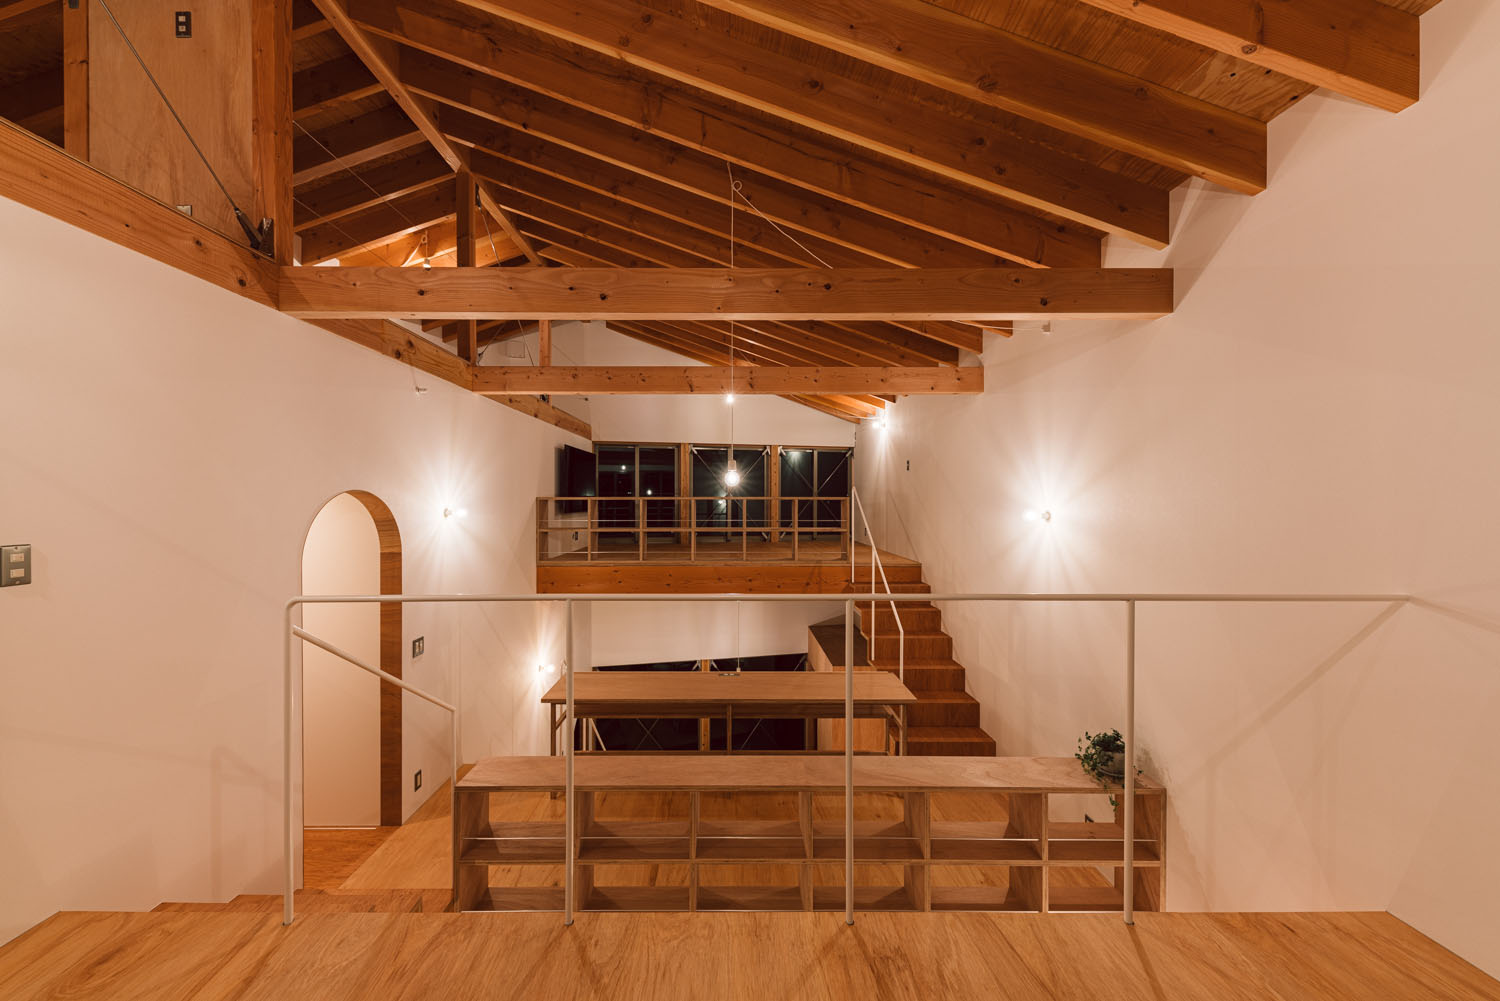 間接照明によって照らされる梁見せ天井のスキップフロア・デザイン住宅